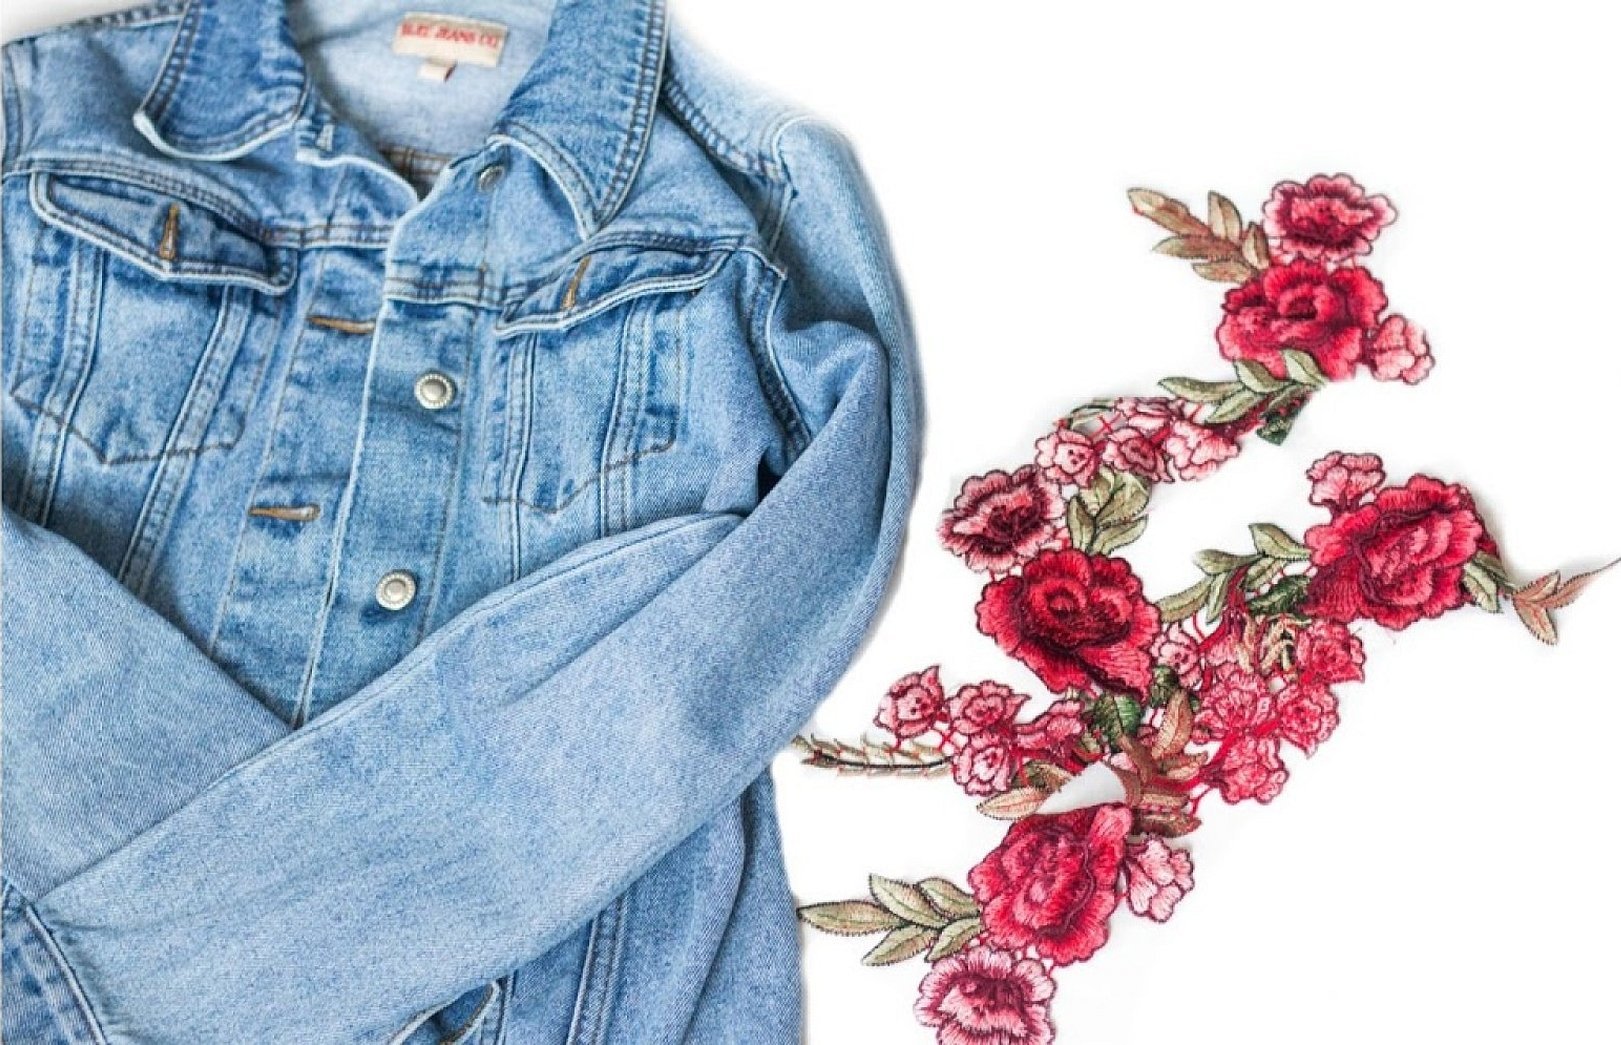 Вышивка на джинсах цветы эстетично